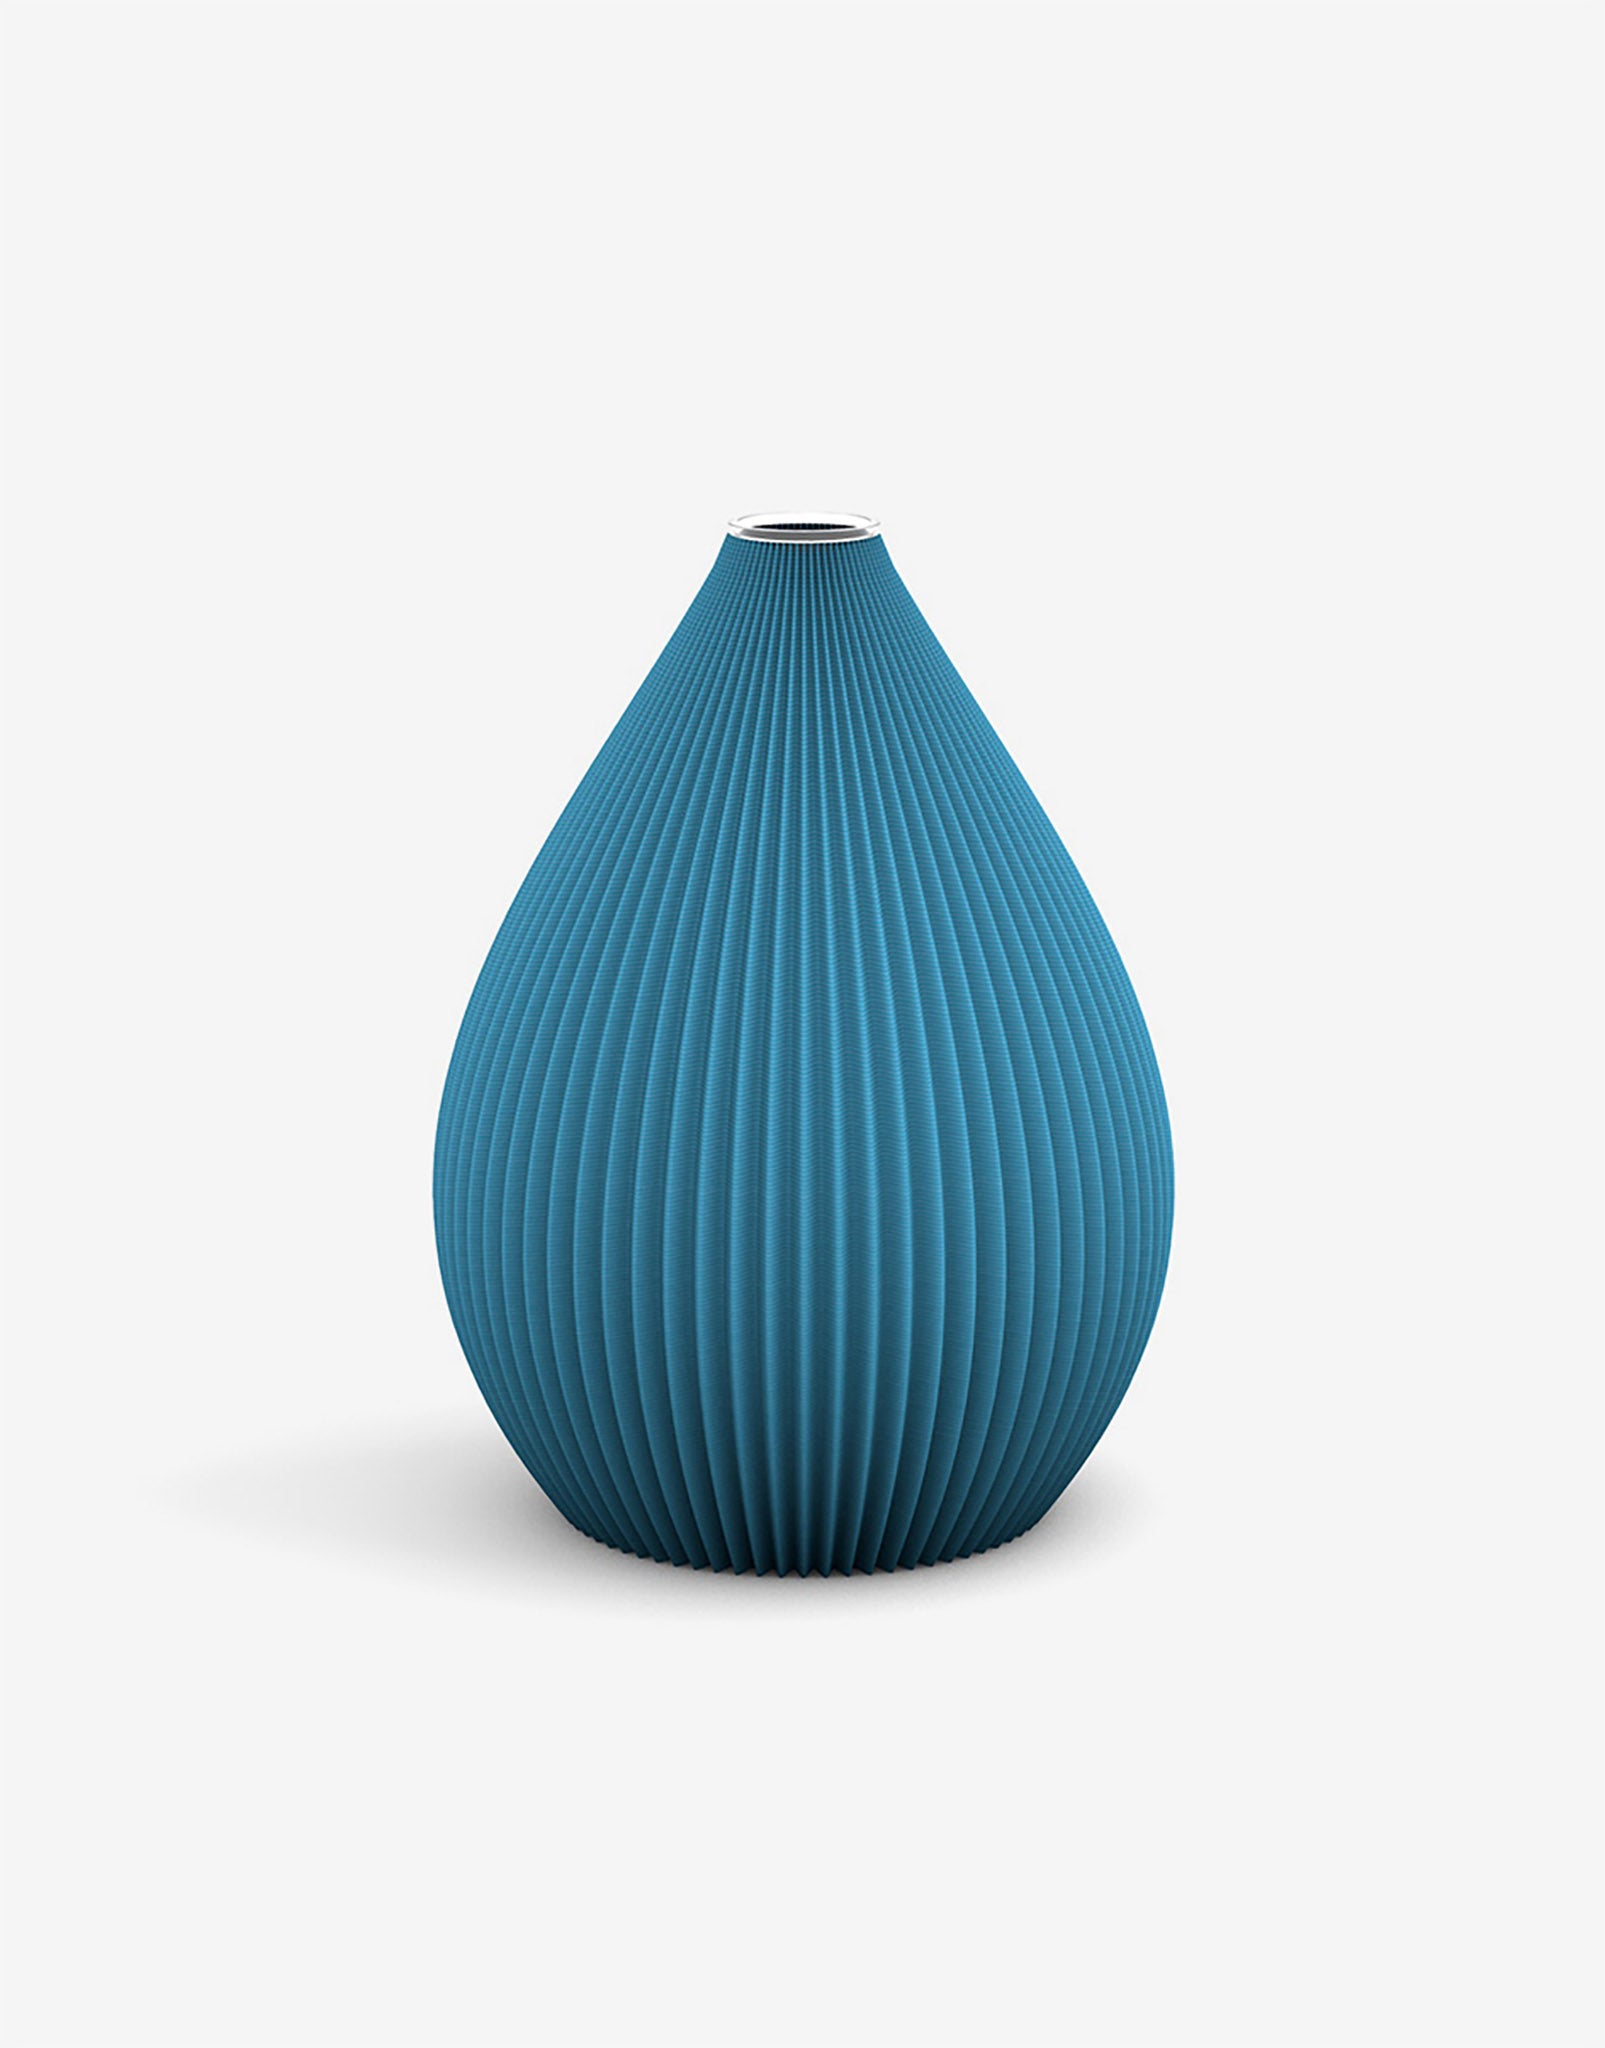 Ovale 3D Druck Kunststoff Vase Balloon von Recozy mit Glaseinsatz, Farbe: Ocean Blue, Größe: S